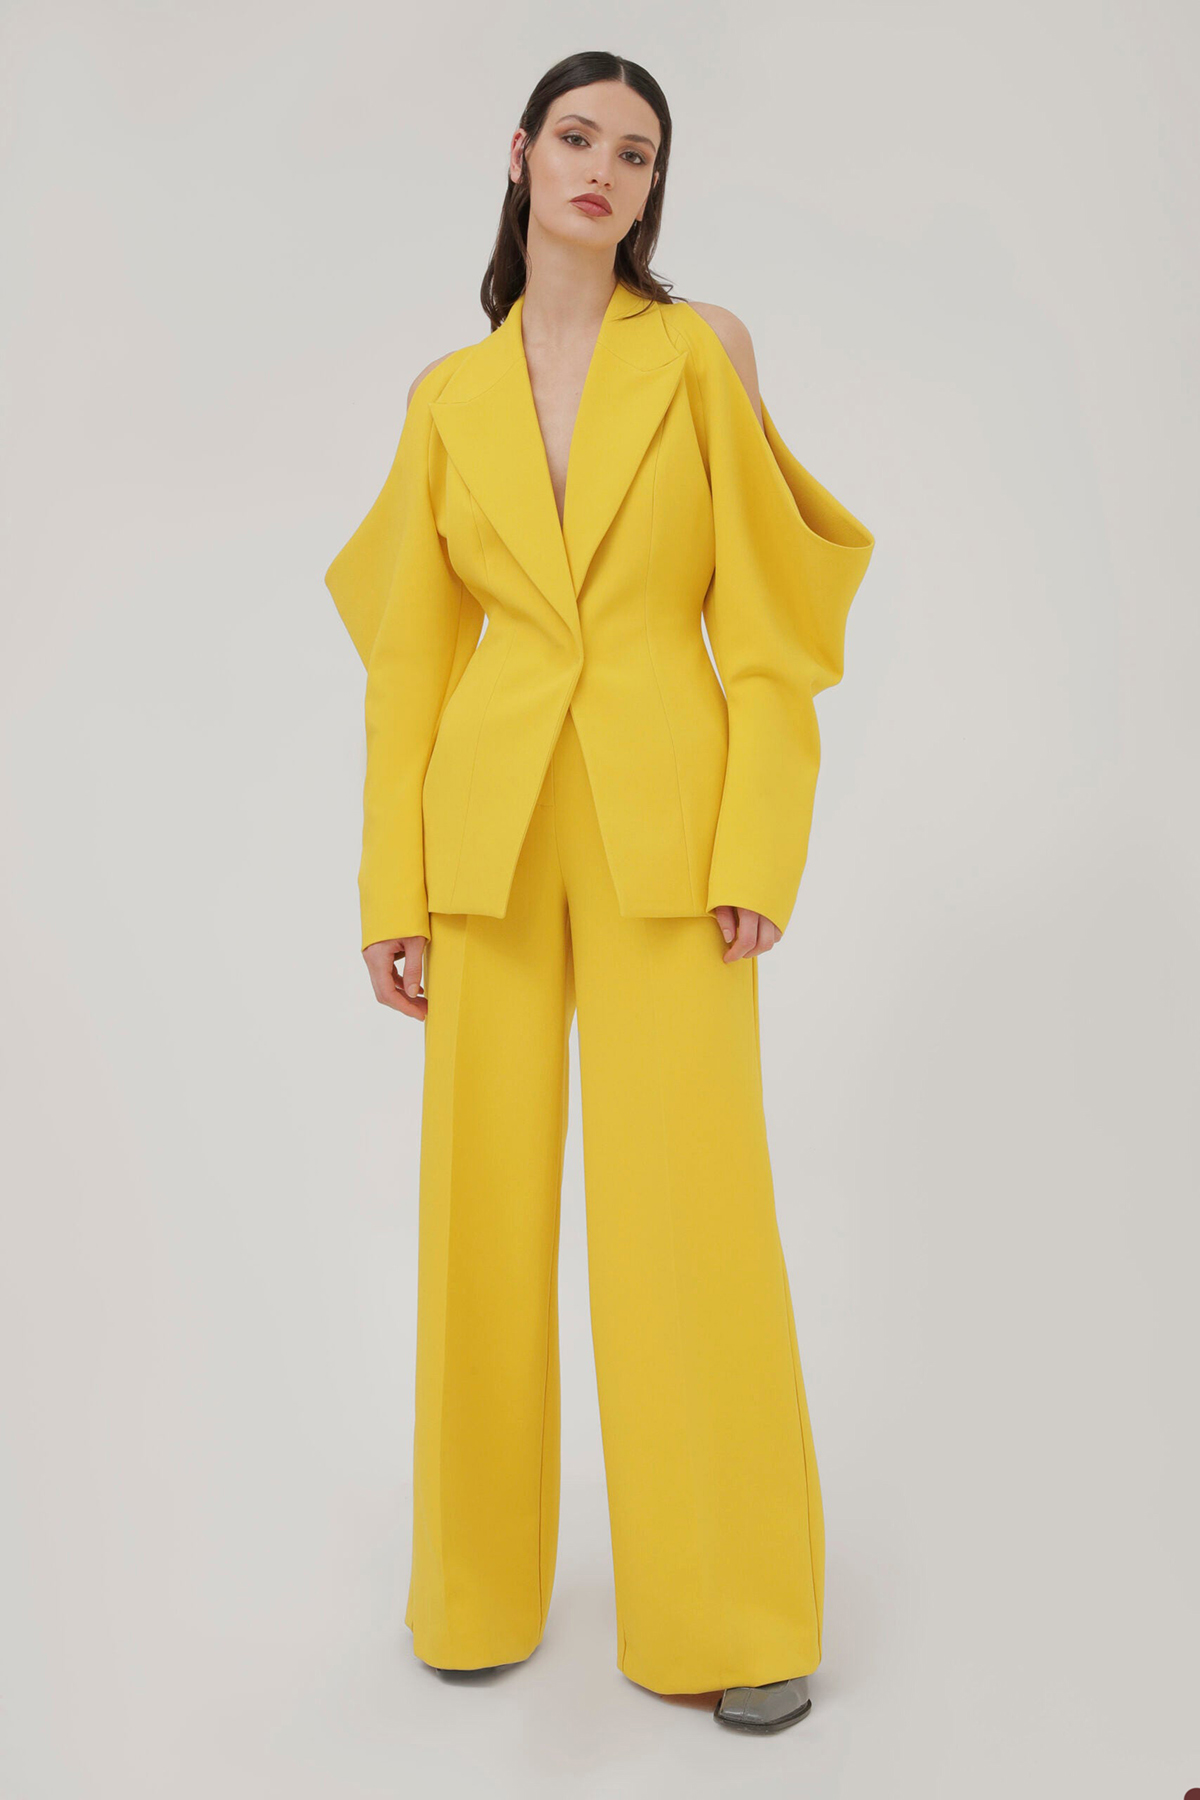 Unique Design Yellow Women Pants Suits Leisure Loose Mother Of The Bride Suit Evening Party Blazer Guest Wear 